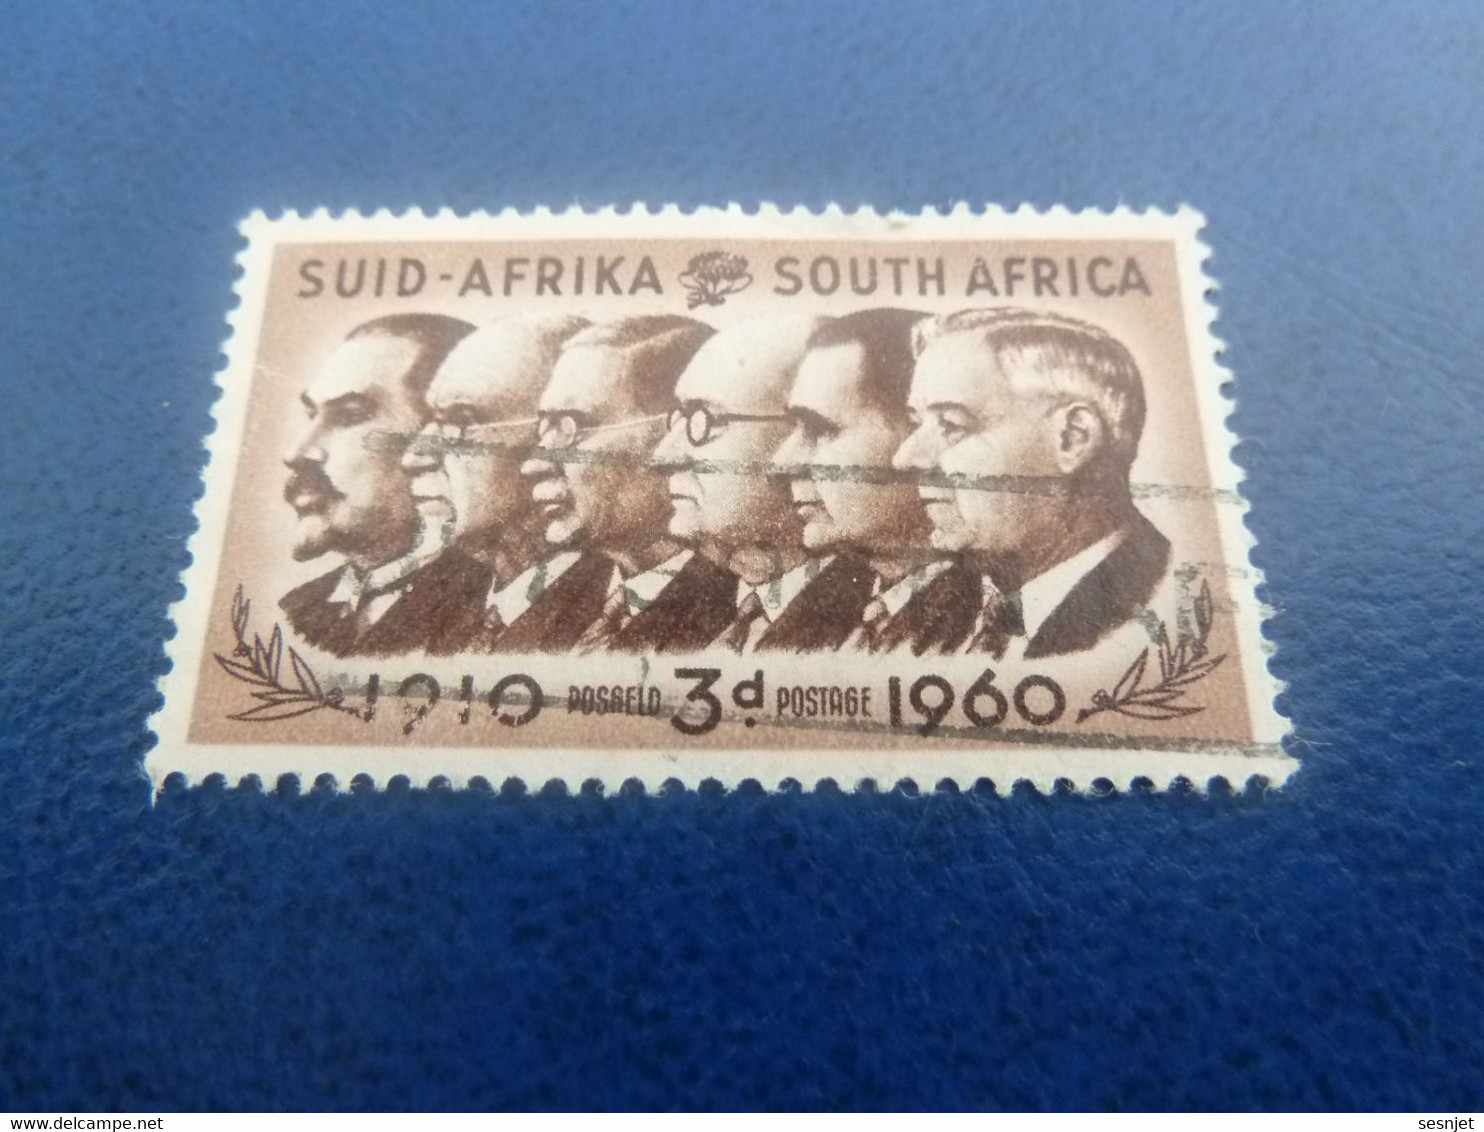 Suid-Africa - South Africa - Célébrités - 3 D. - Postage - Brun Et Brun Foncé - Oblitéré - Année 1960 - - Gebraucht